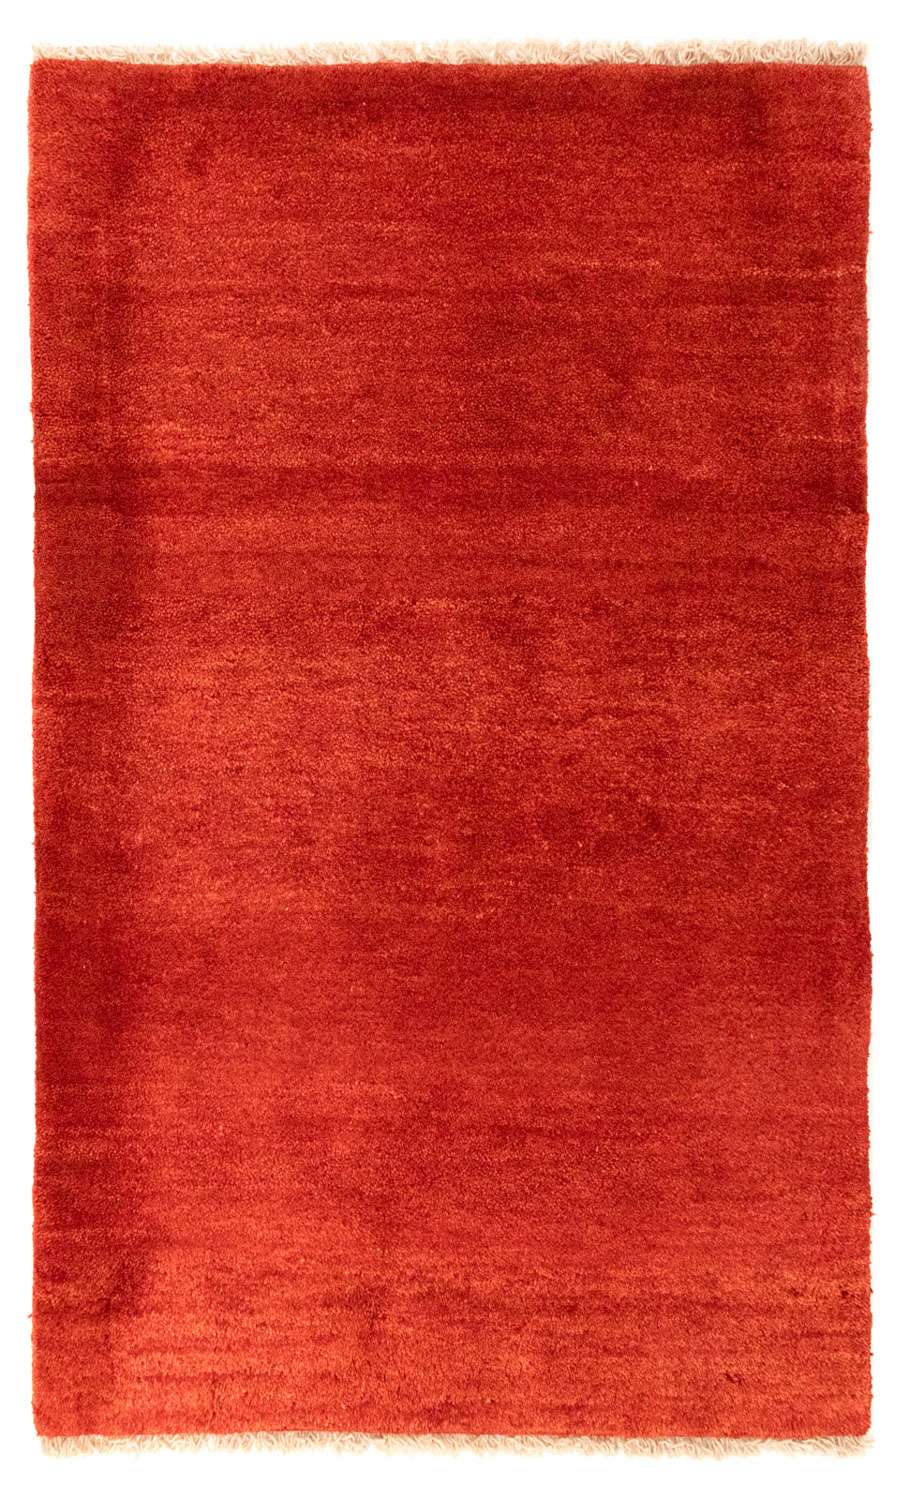 Dywan Gabbeh - perski - 127 x 82 cm - czerwony